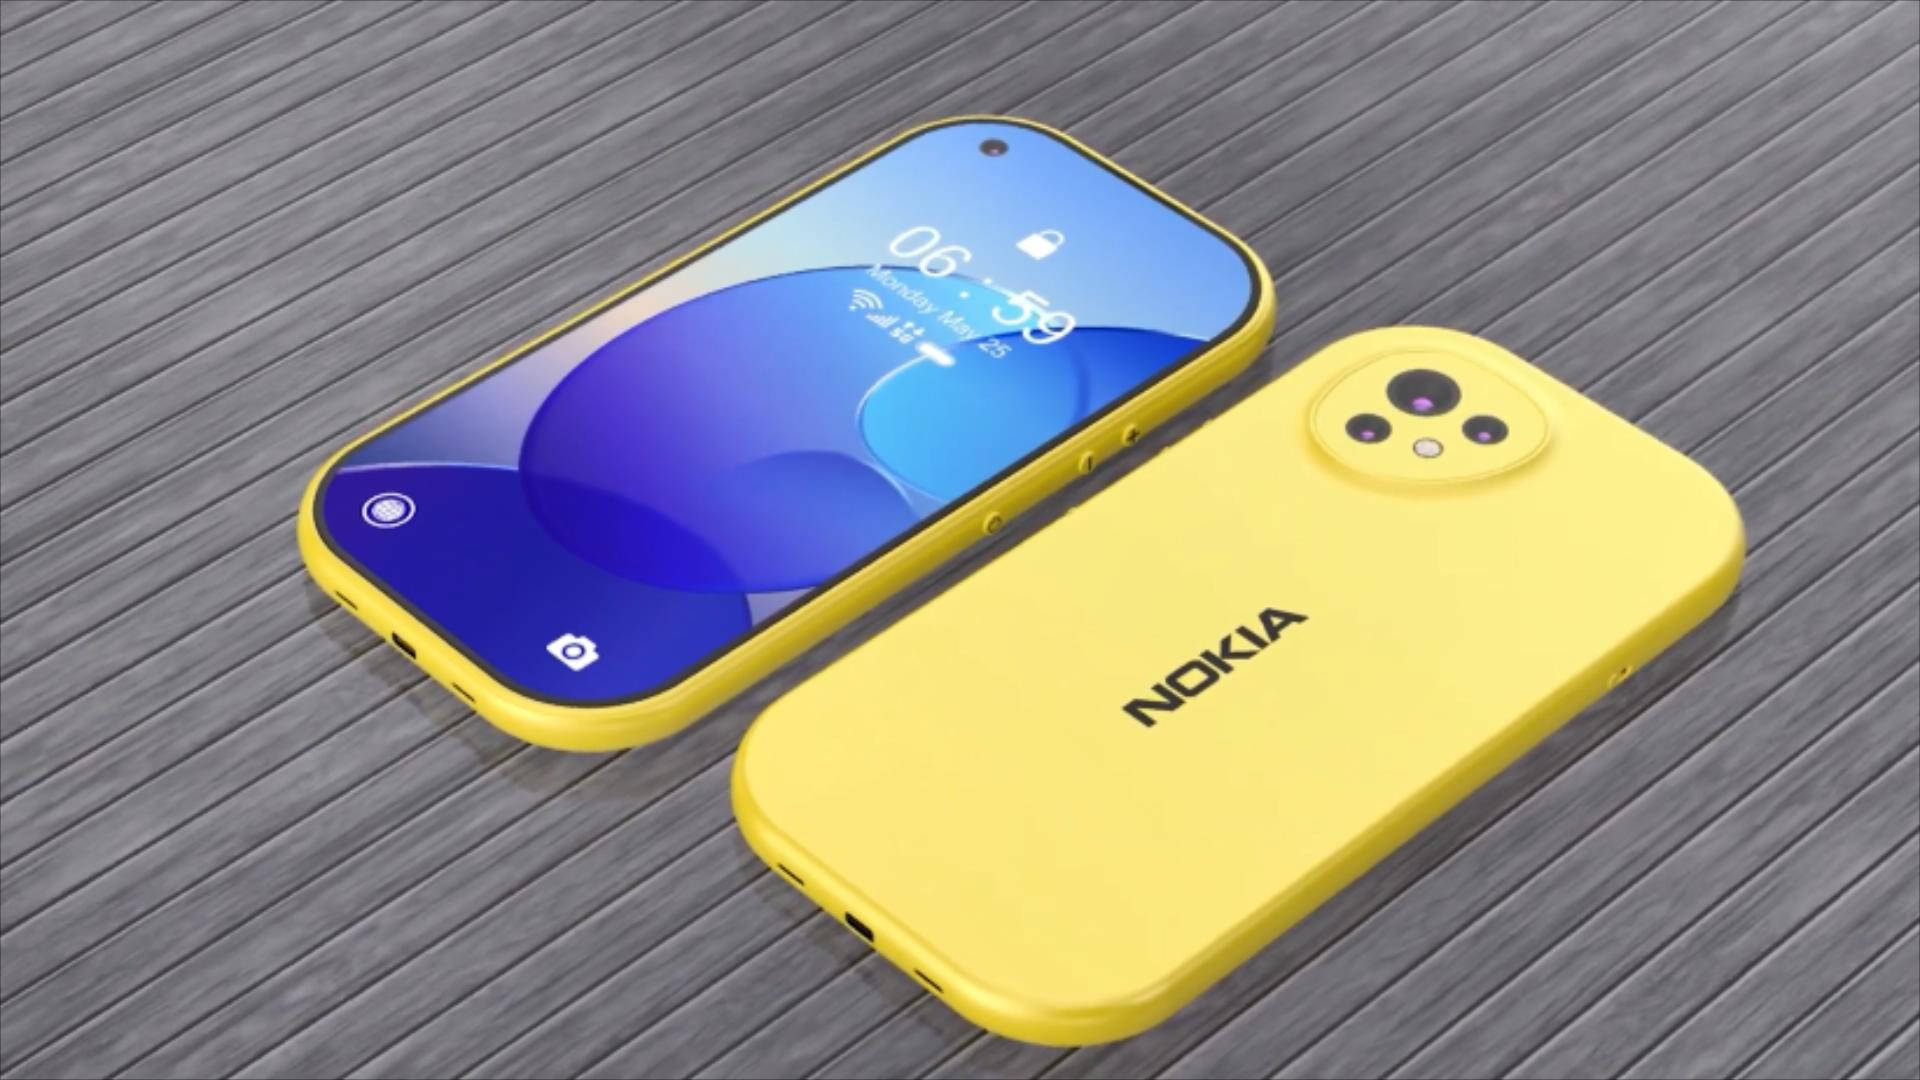 诺基亚N8多少钱_诺基亚N8手机参数配置【怎么样|好用吗】-太平洋产品报价